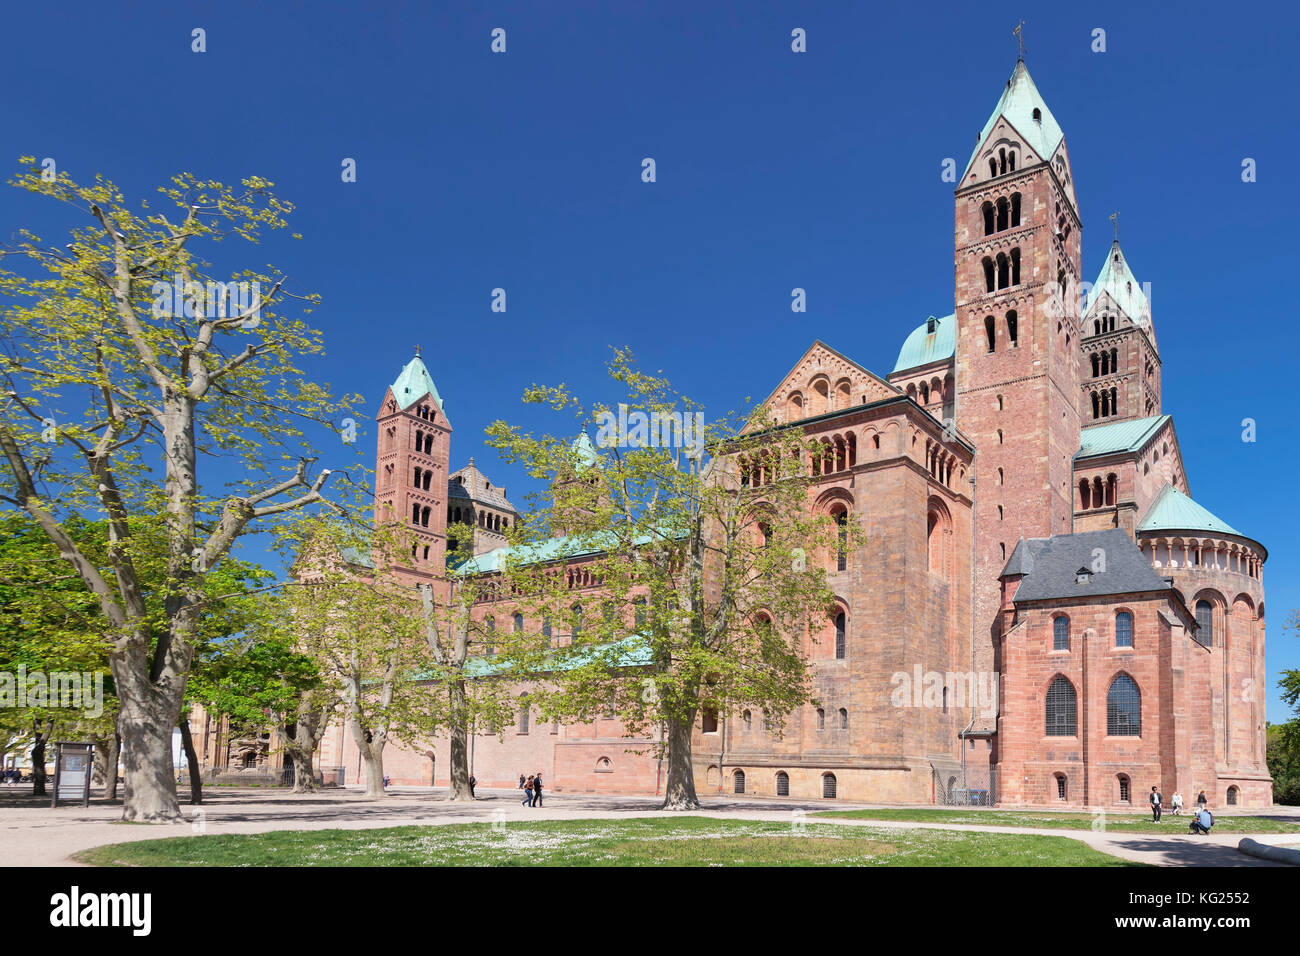 Kaiserdom Cathedral, UNESCO World Heritage Site, Speyer, Rhineland-Palatinate, Germany, Europe Stock Photo